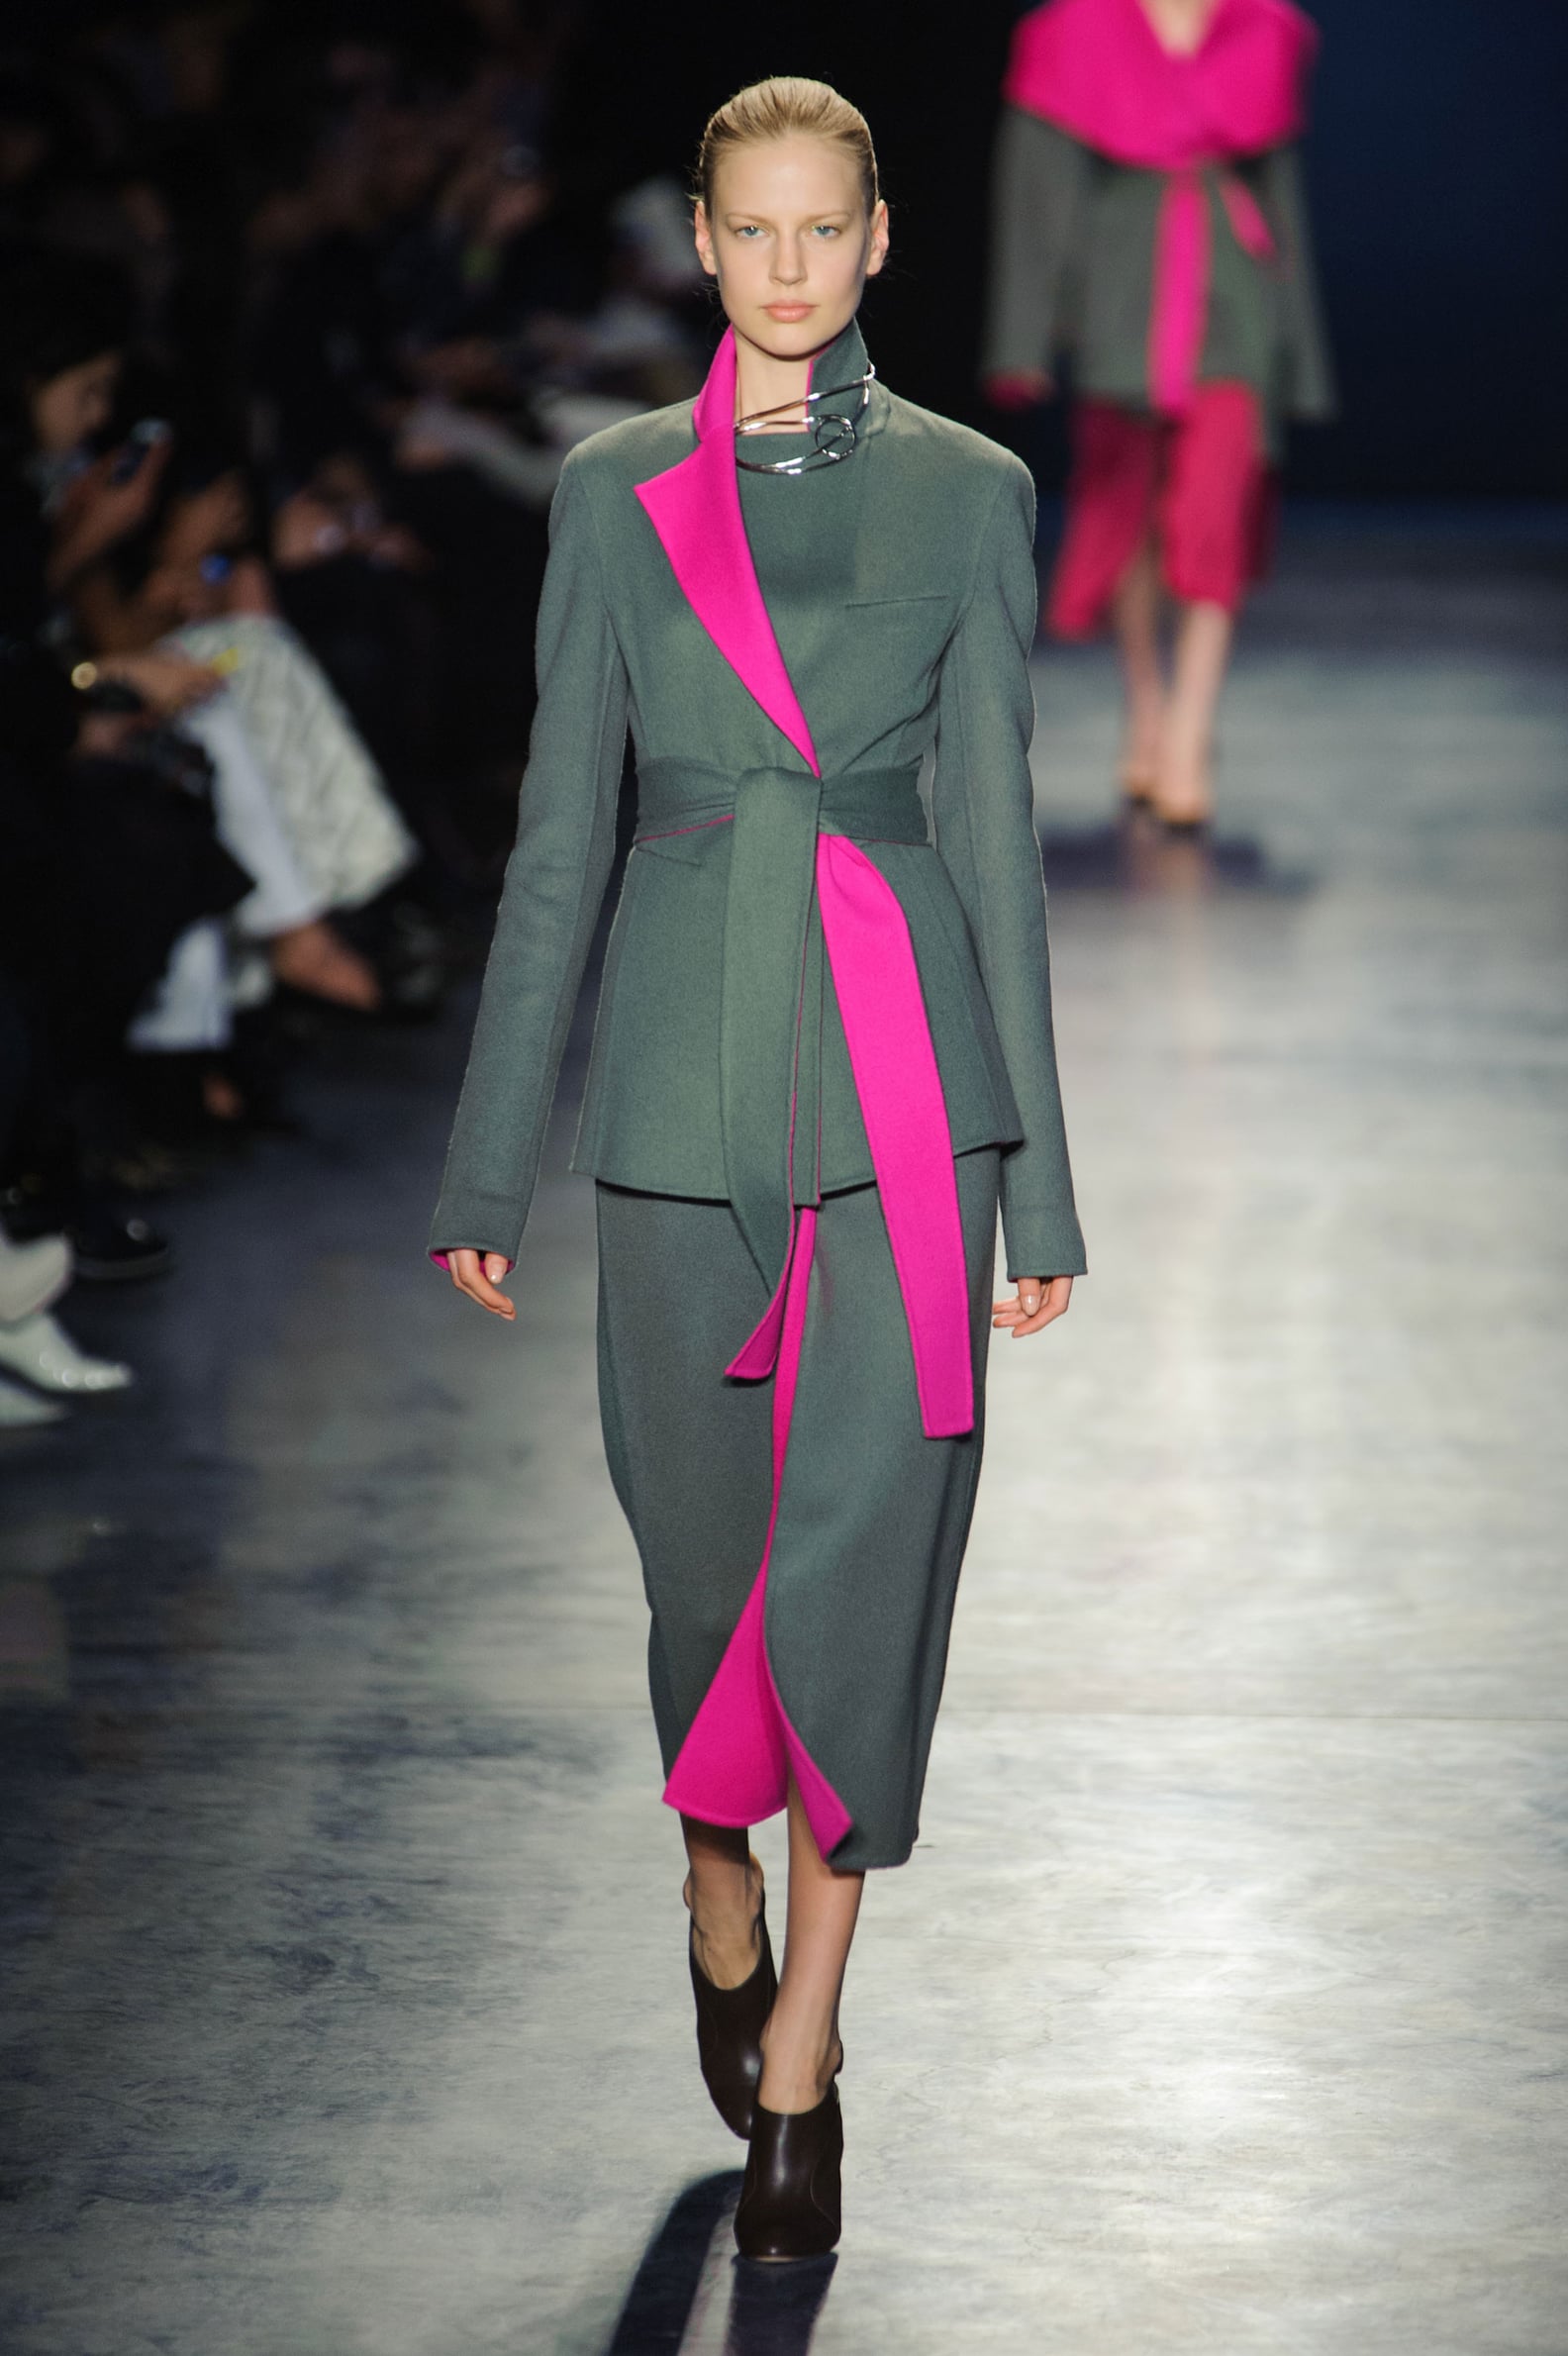 Altuzarra Fall 2014 Runway Show | New York Fashion Week | POPSUGAR Fashion